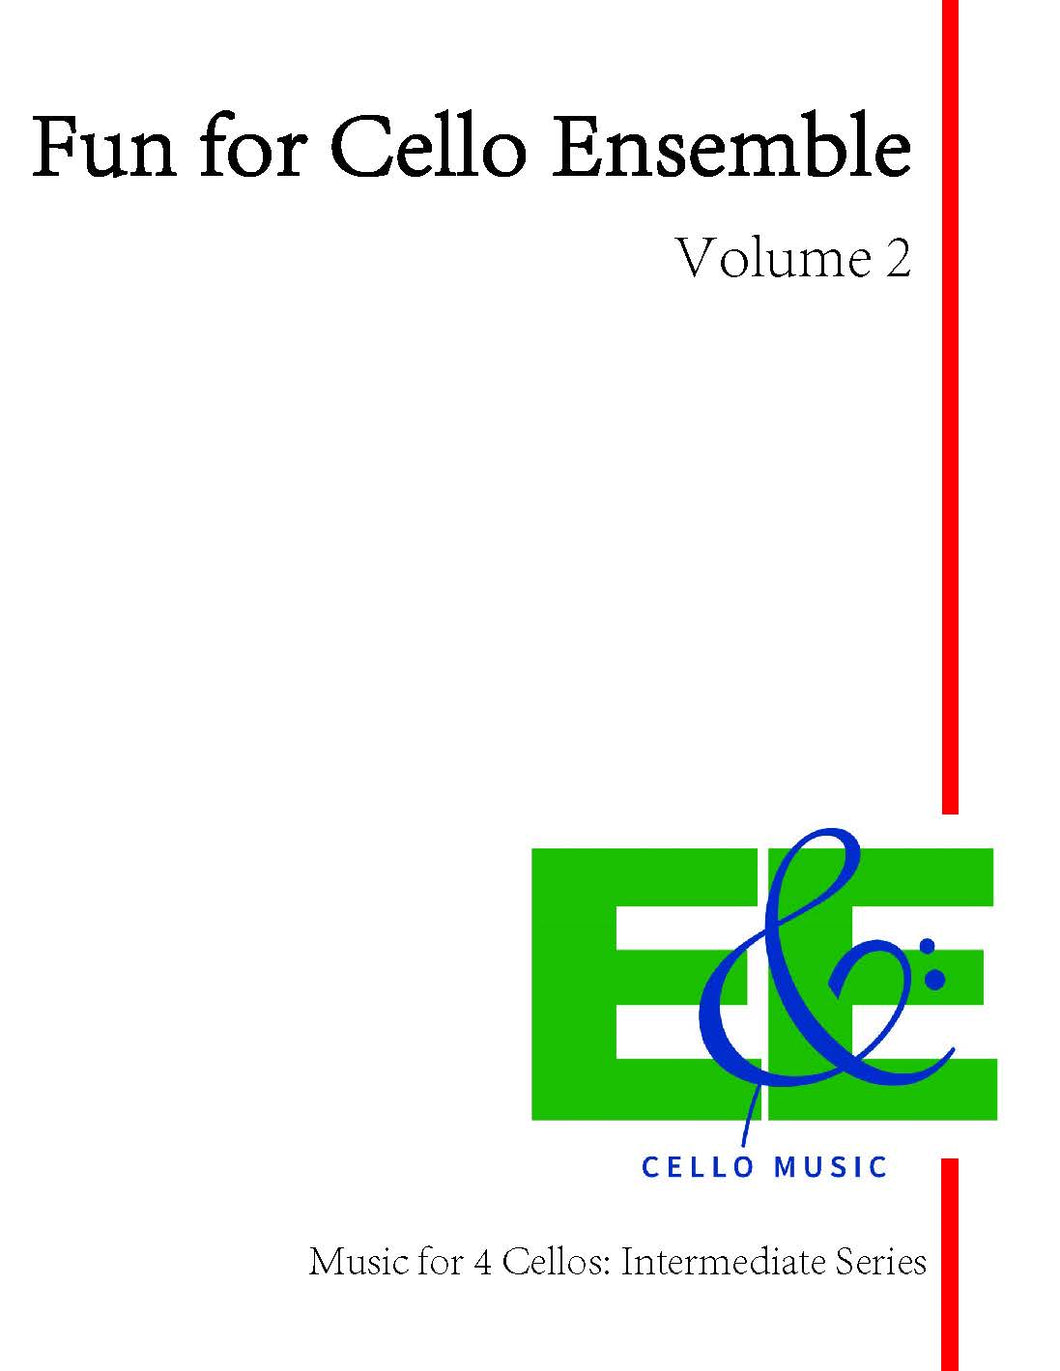 Fun for Cello Ensemble Vol. 2<br>Music for 4 Cellos:<br>Intermediate Series<br>*Digital Download